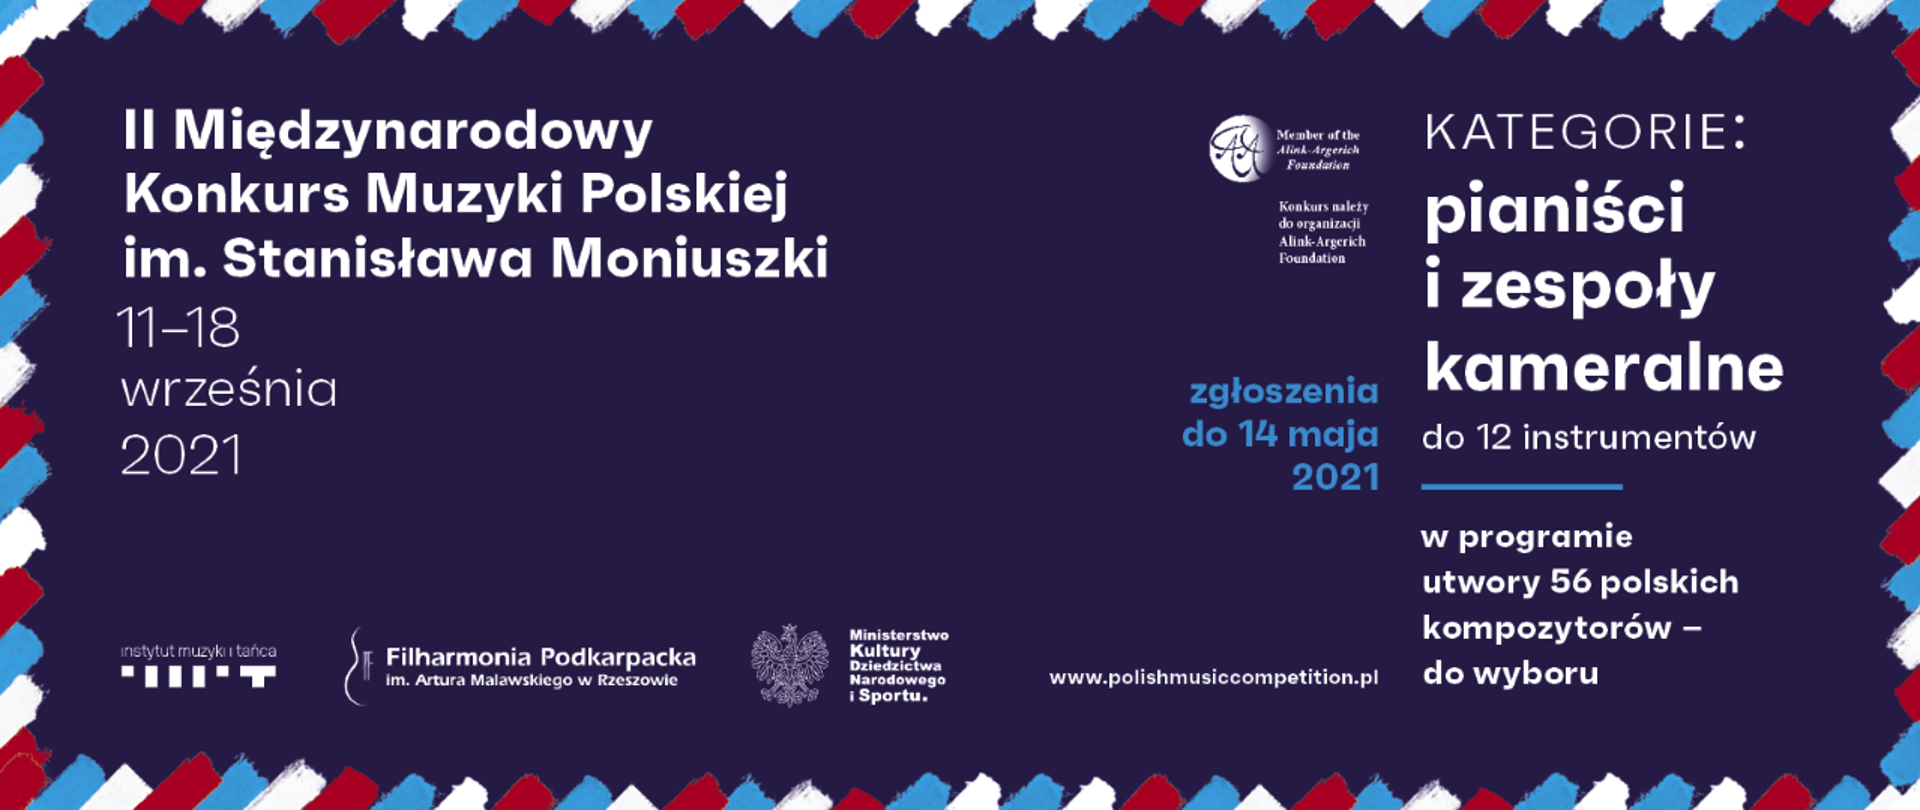 II Międzynarodowy Konkurs Muzyki Polskiej im. Stanisława Moniuszki 2021